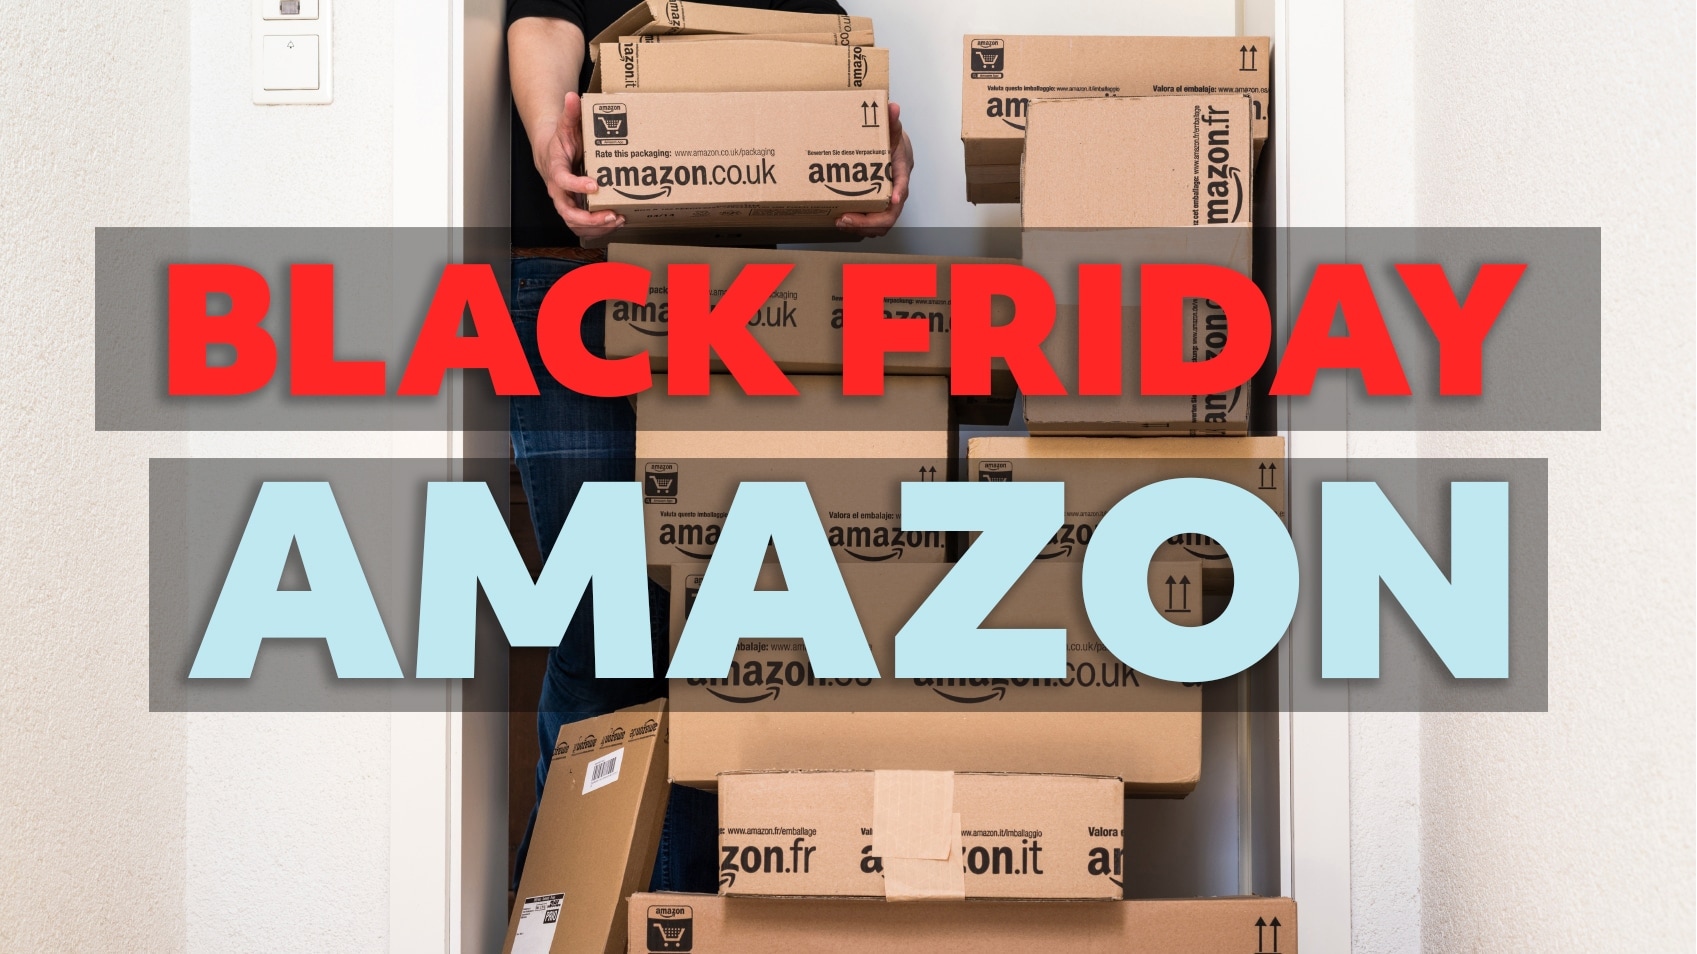 È stato un Black Friday da record per Amazon, dice Amazon - image black-friday-amazon-best-of on https://www.zxbyte.com